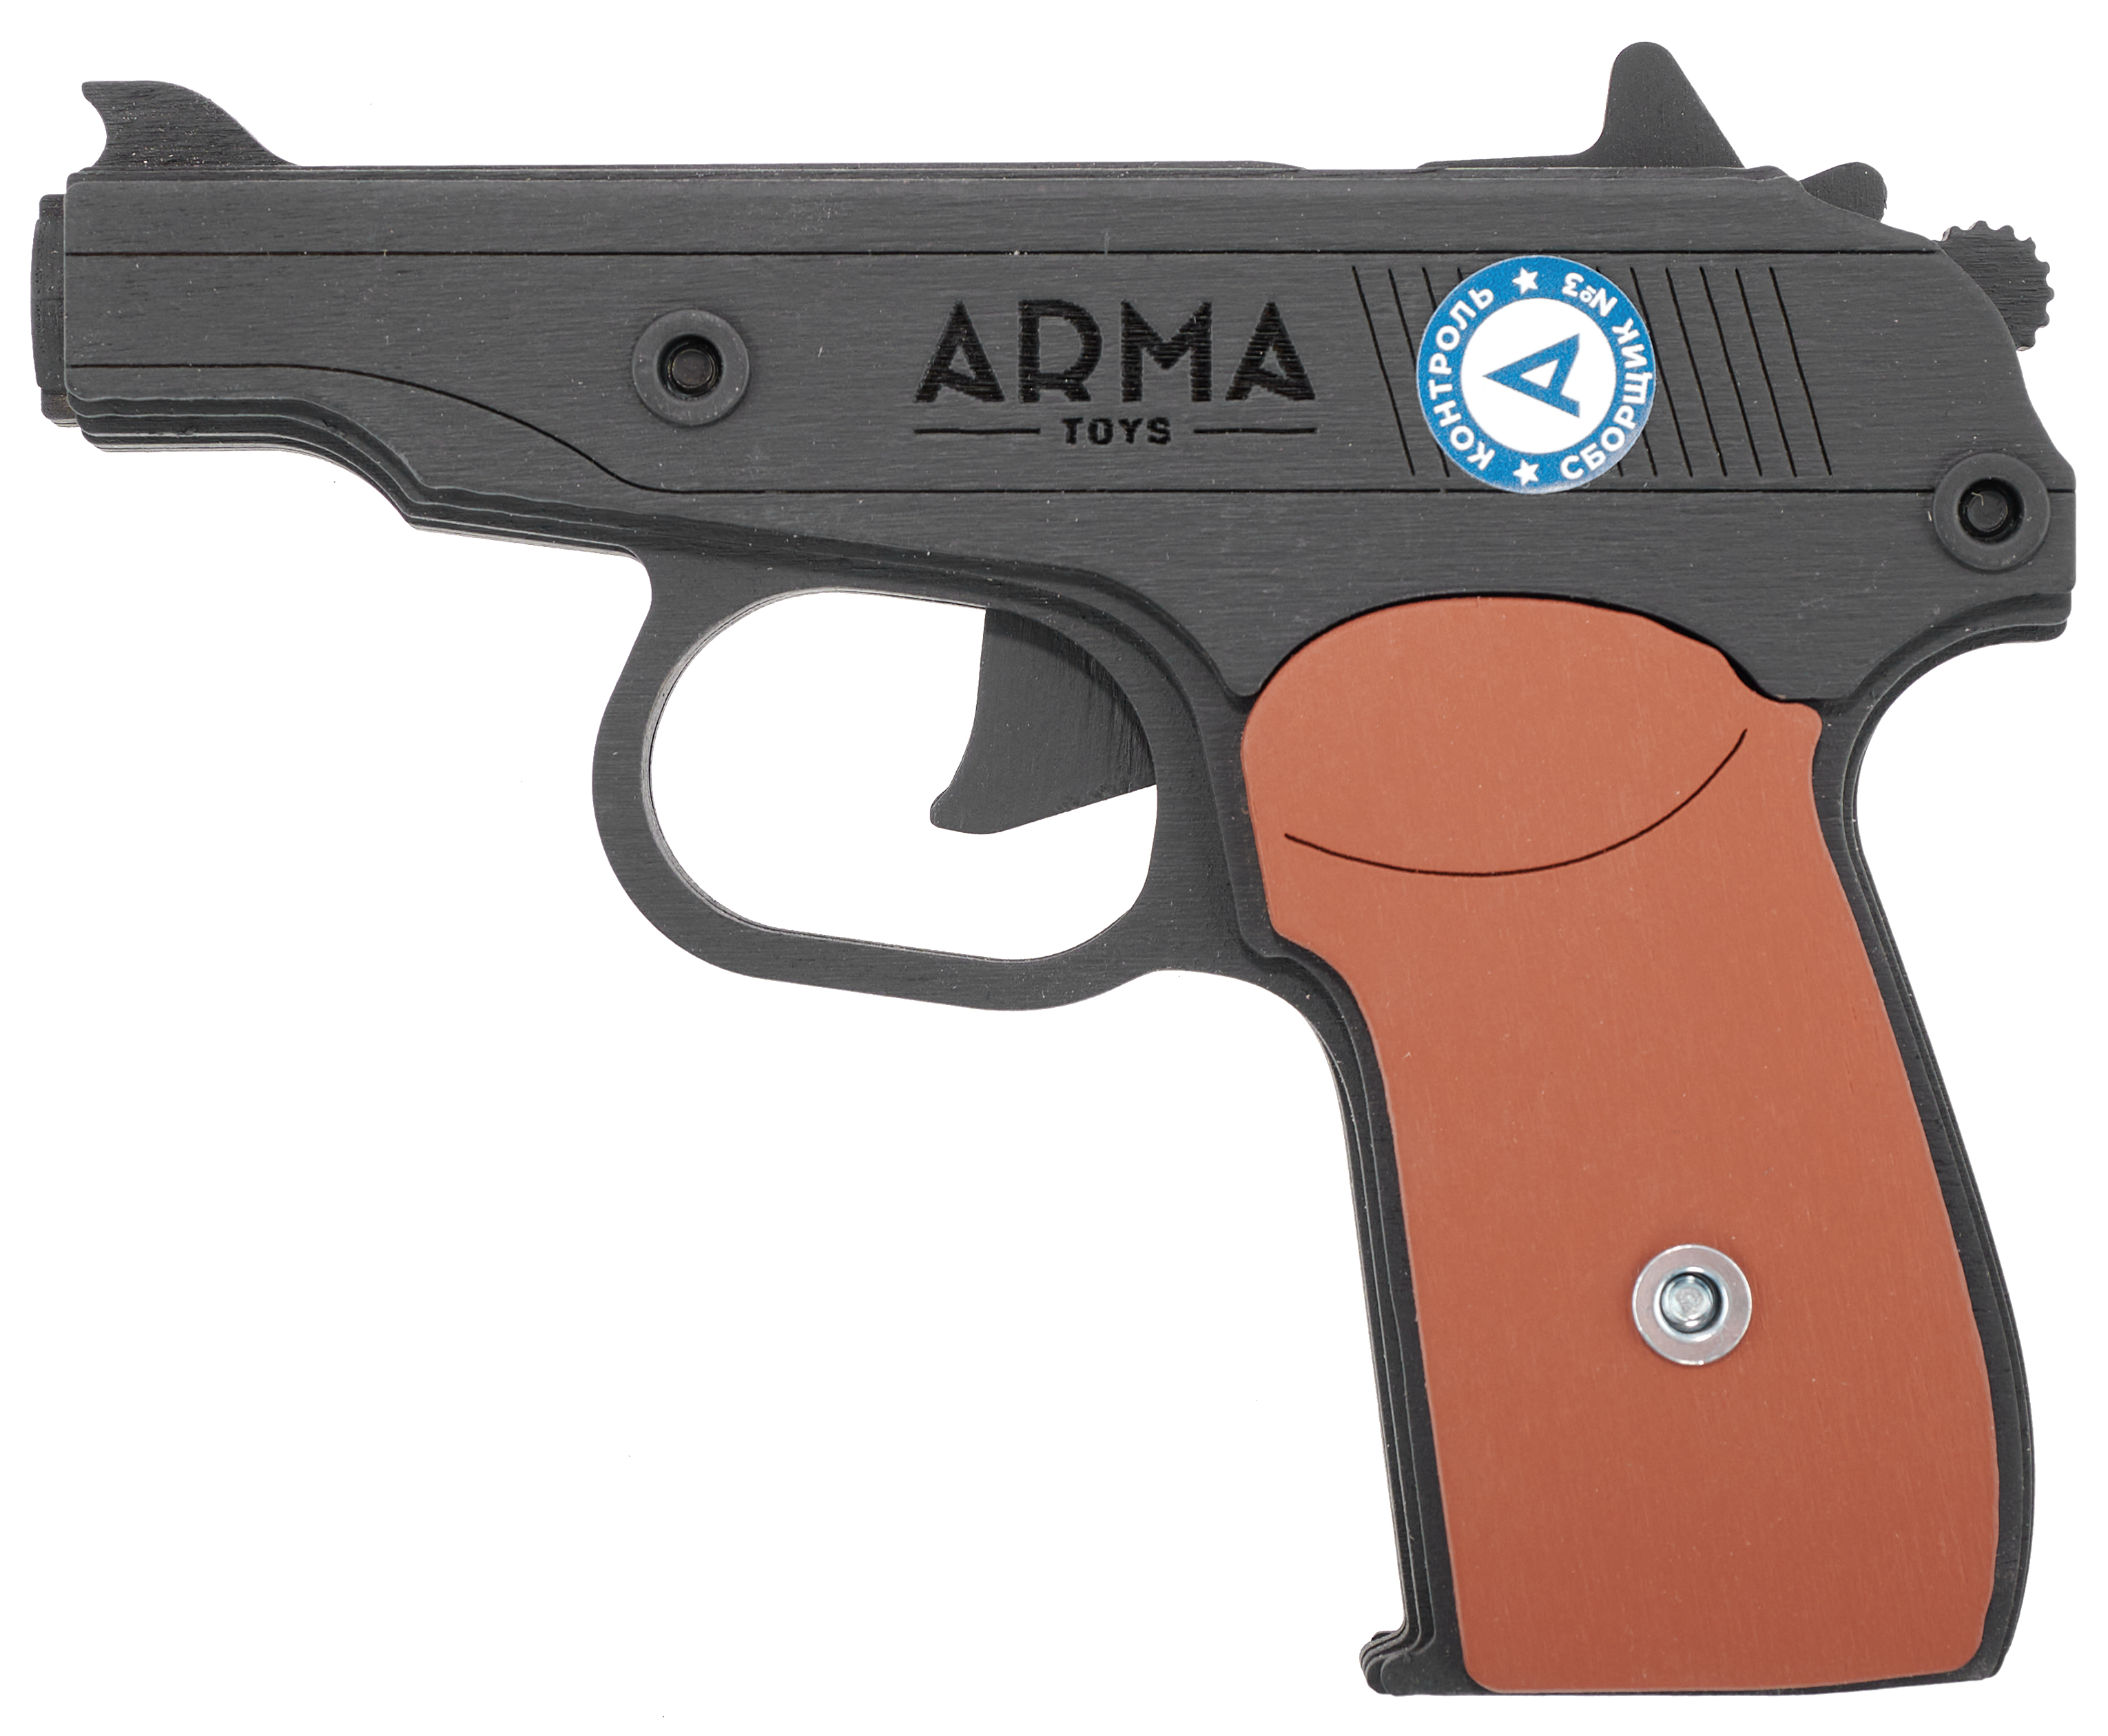 Резинкострел игрушечный Arma toys пистолет Макарова макет, ПМ, окрашенный, AT012K резинкострел игрушечный из дерева армия россии ппш окрашенный ar p010